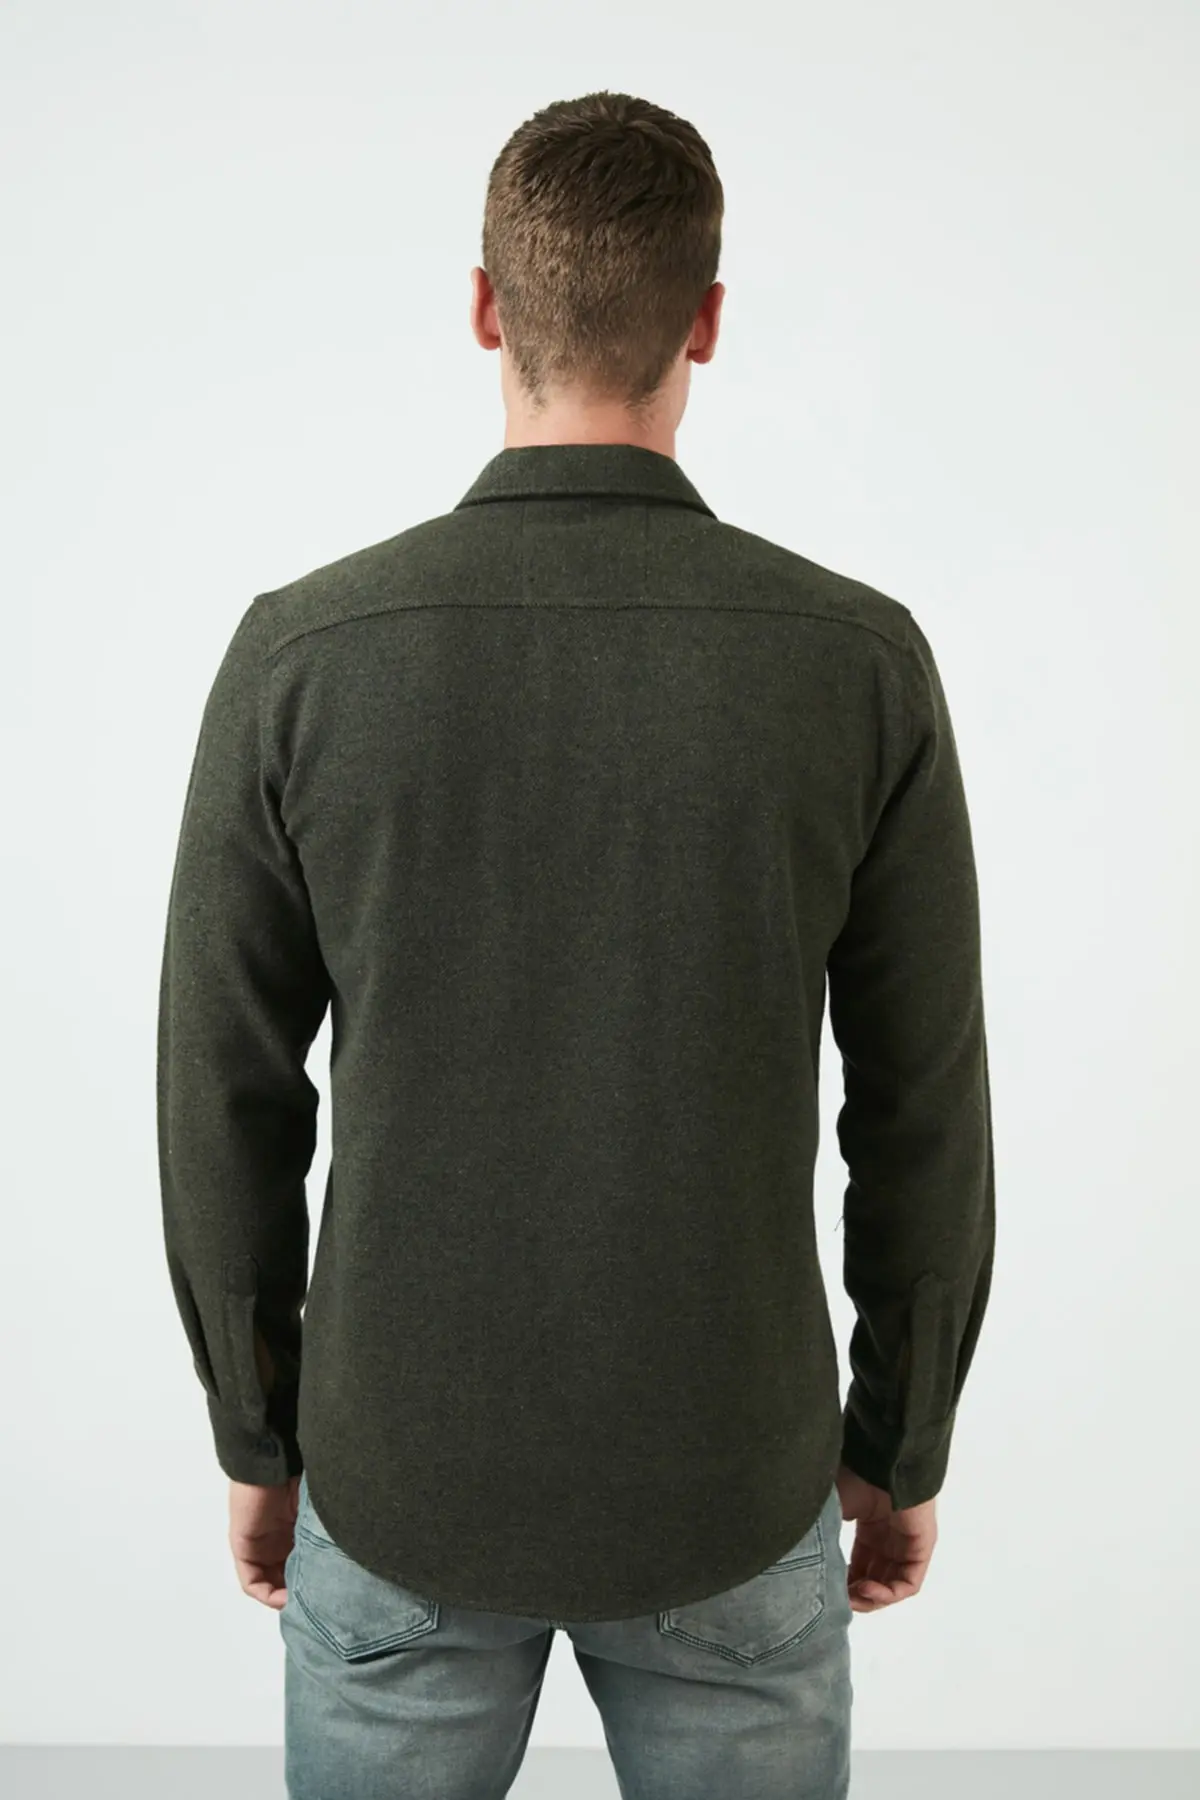 پیراهن زمستانی زیپ دار دو جیب مردانه سبز تیره برند Buratti 